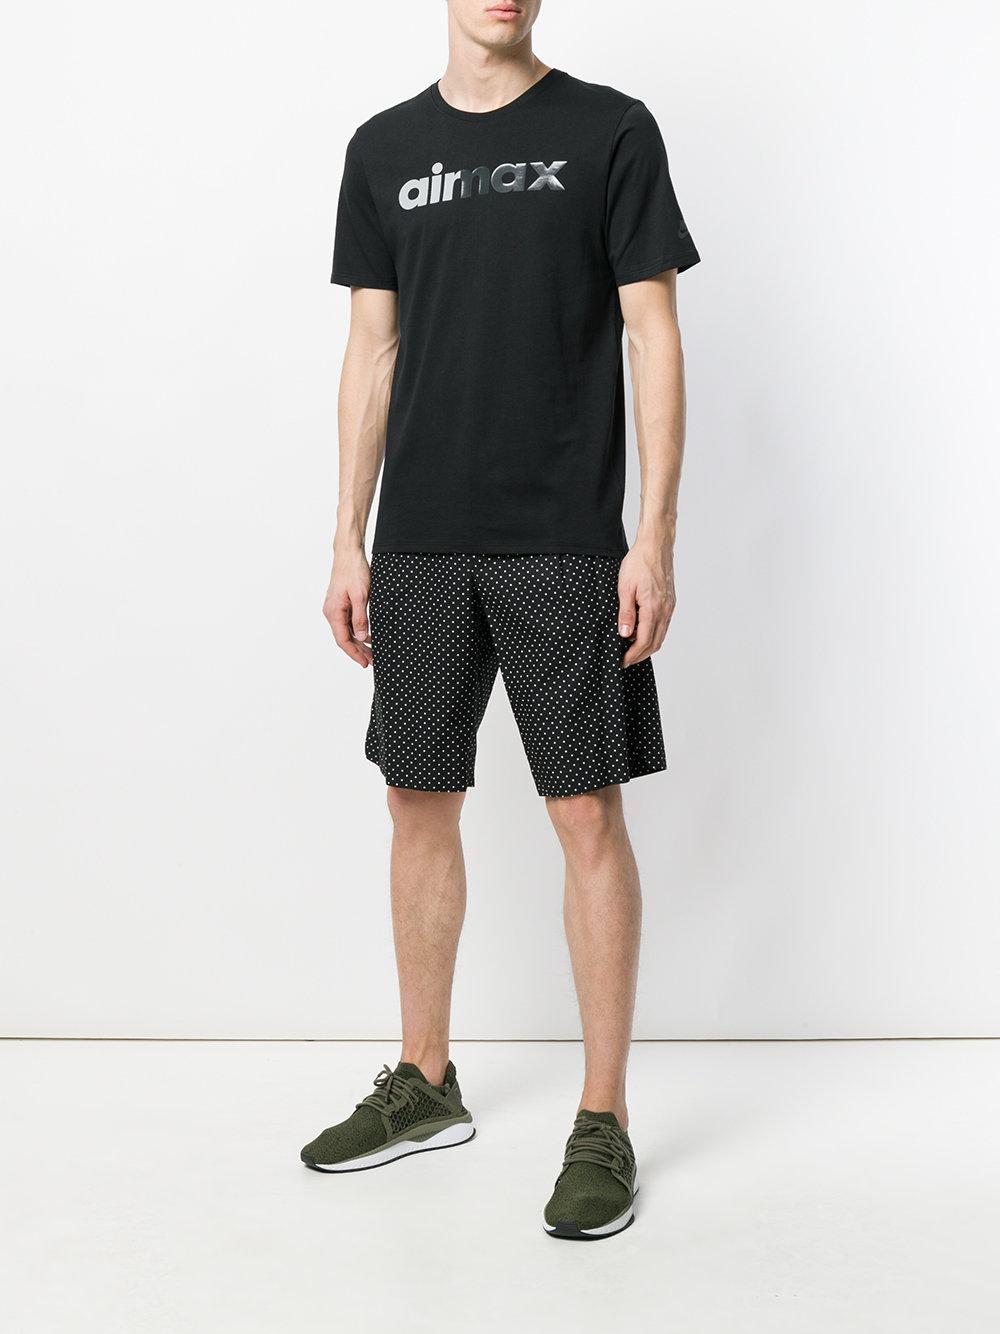 Nike Air Max 95 Printed T-shirt in Black for Men | Lyst